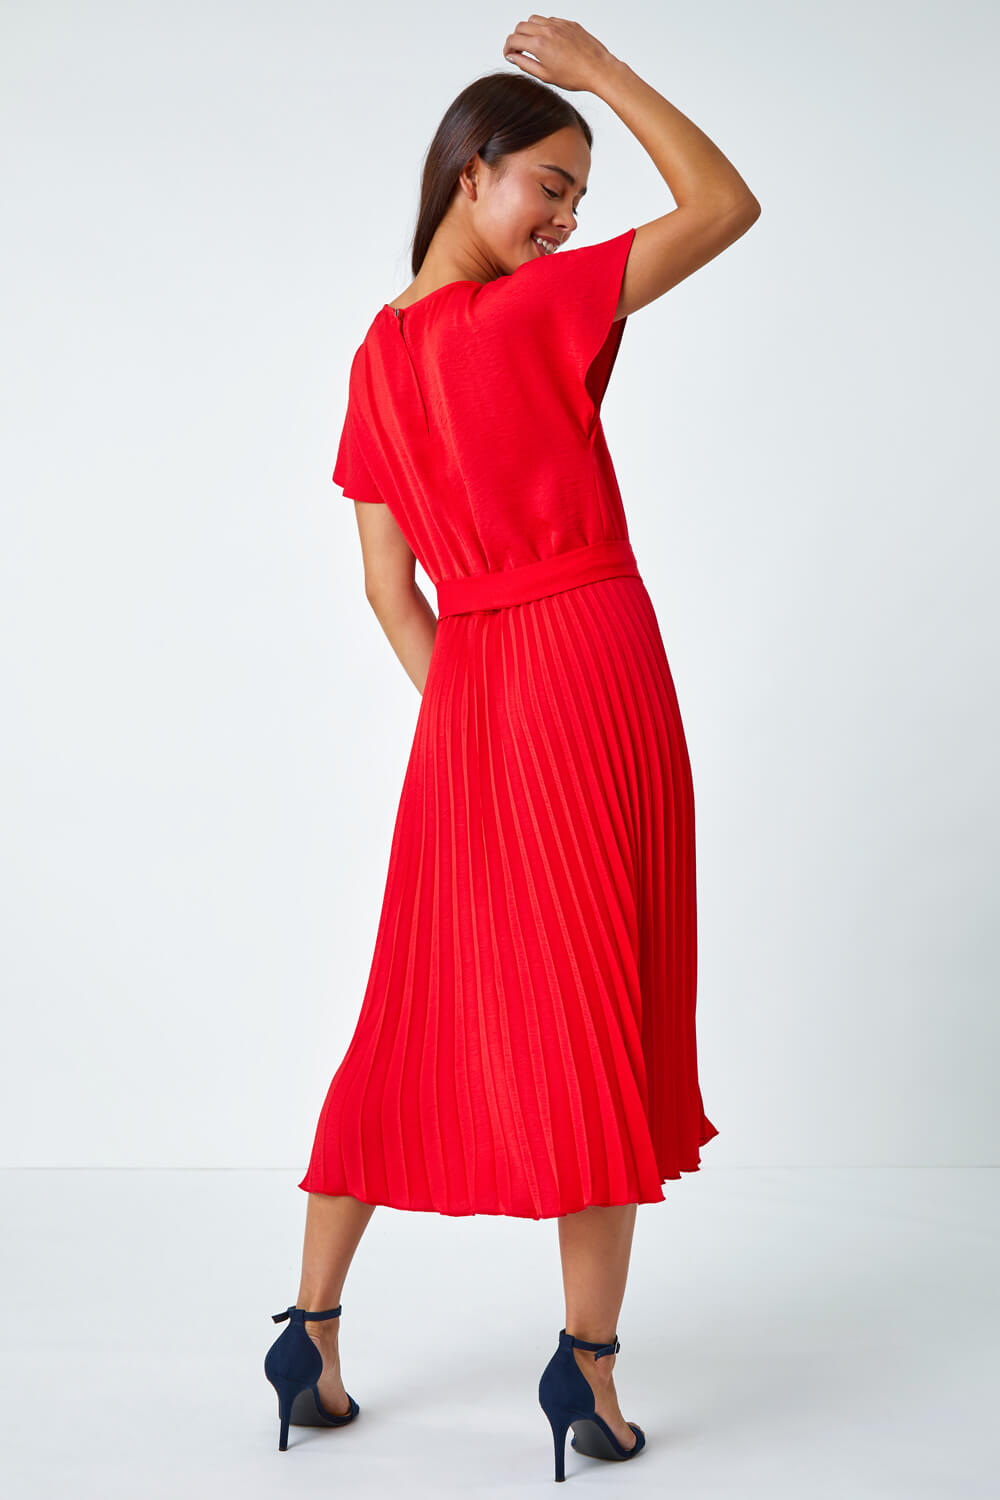 Red Petite Plain Pleated Skirt Midi Dress, Image 3 of 5